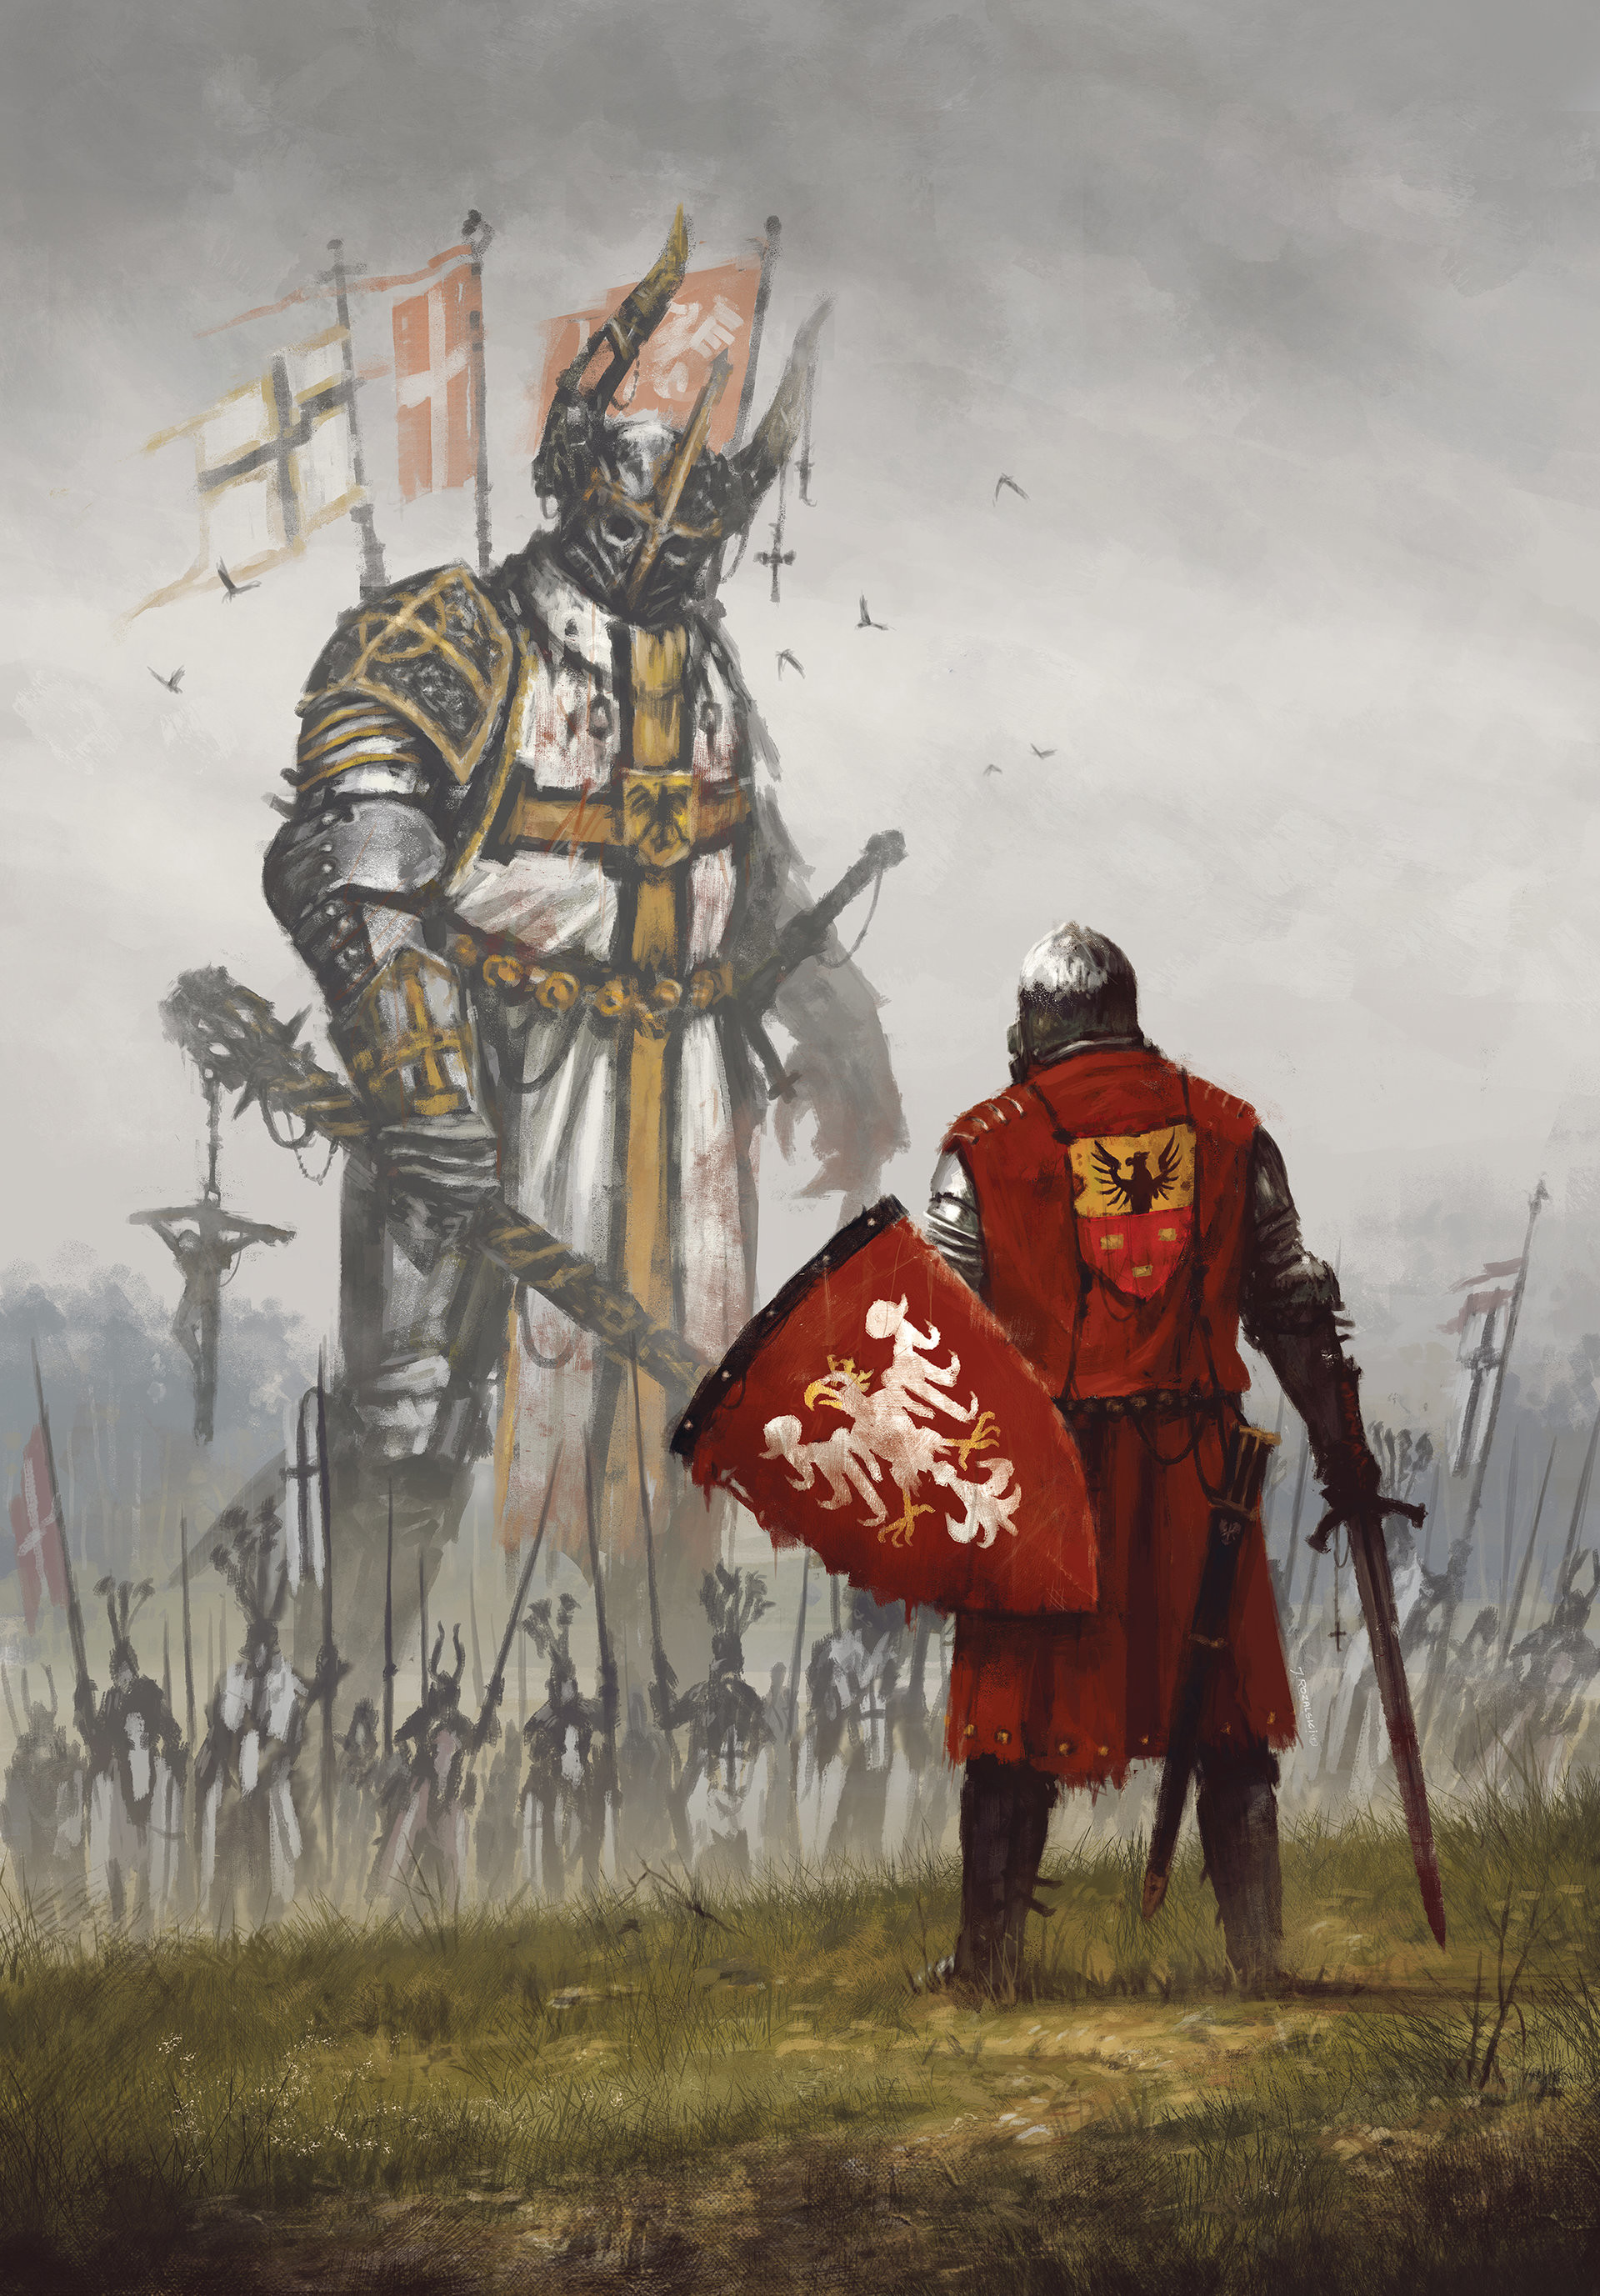 Medieval Battle Wallpaper (70+ images)